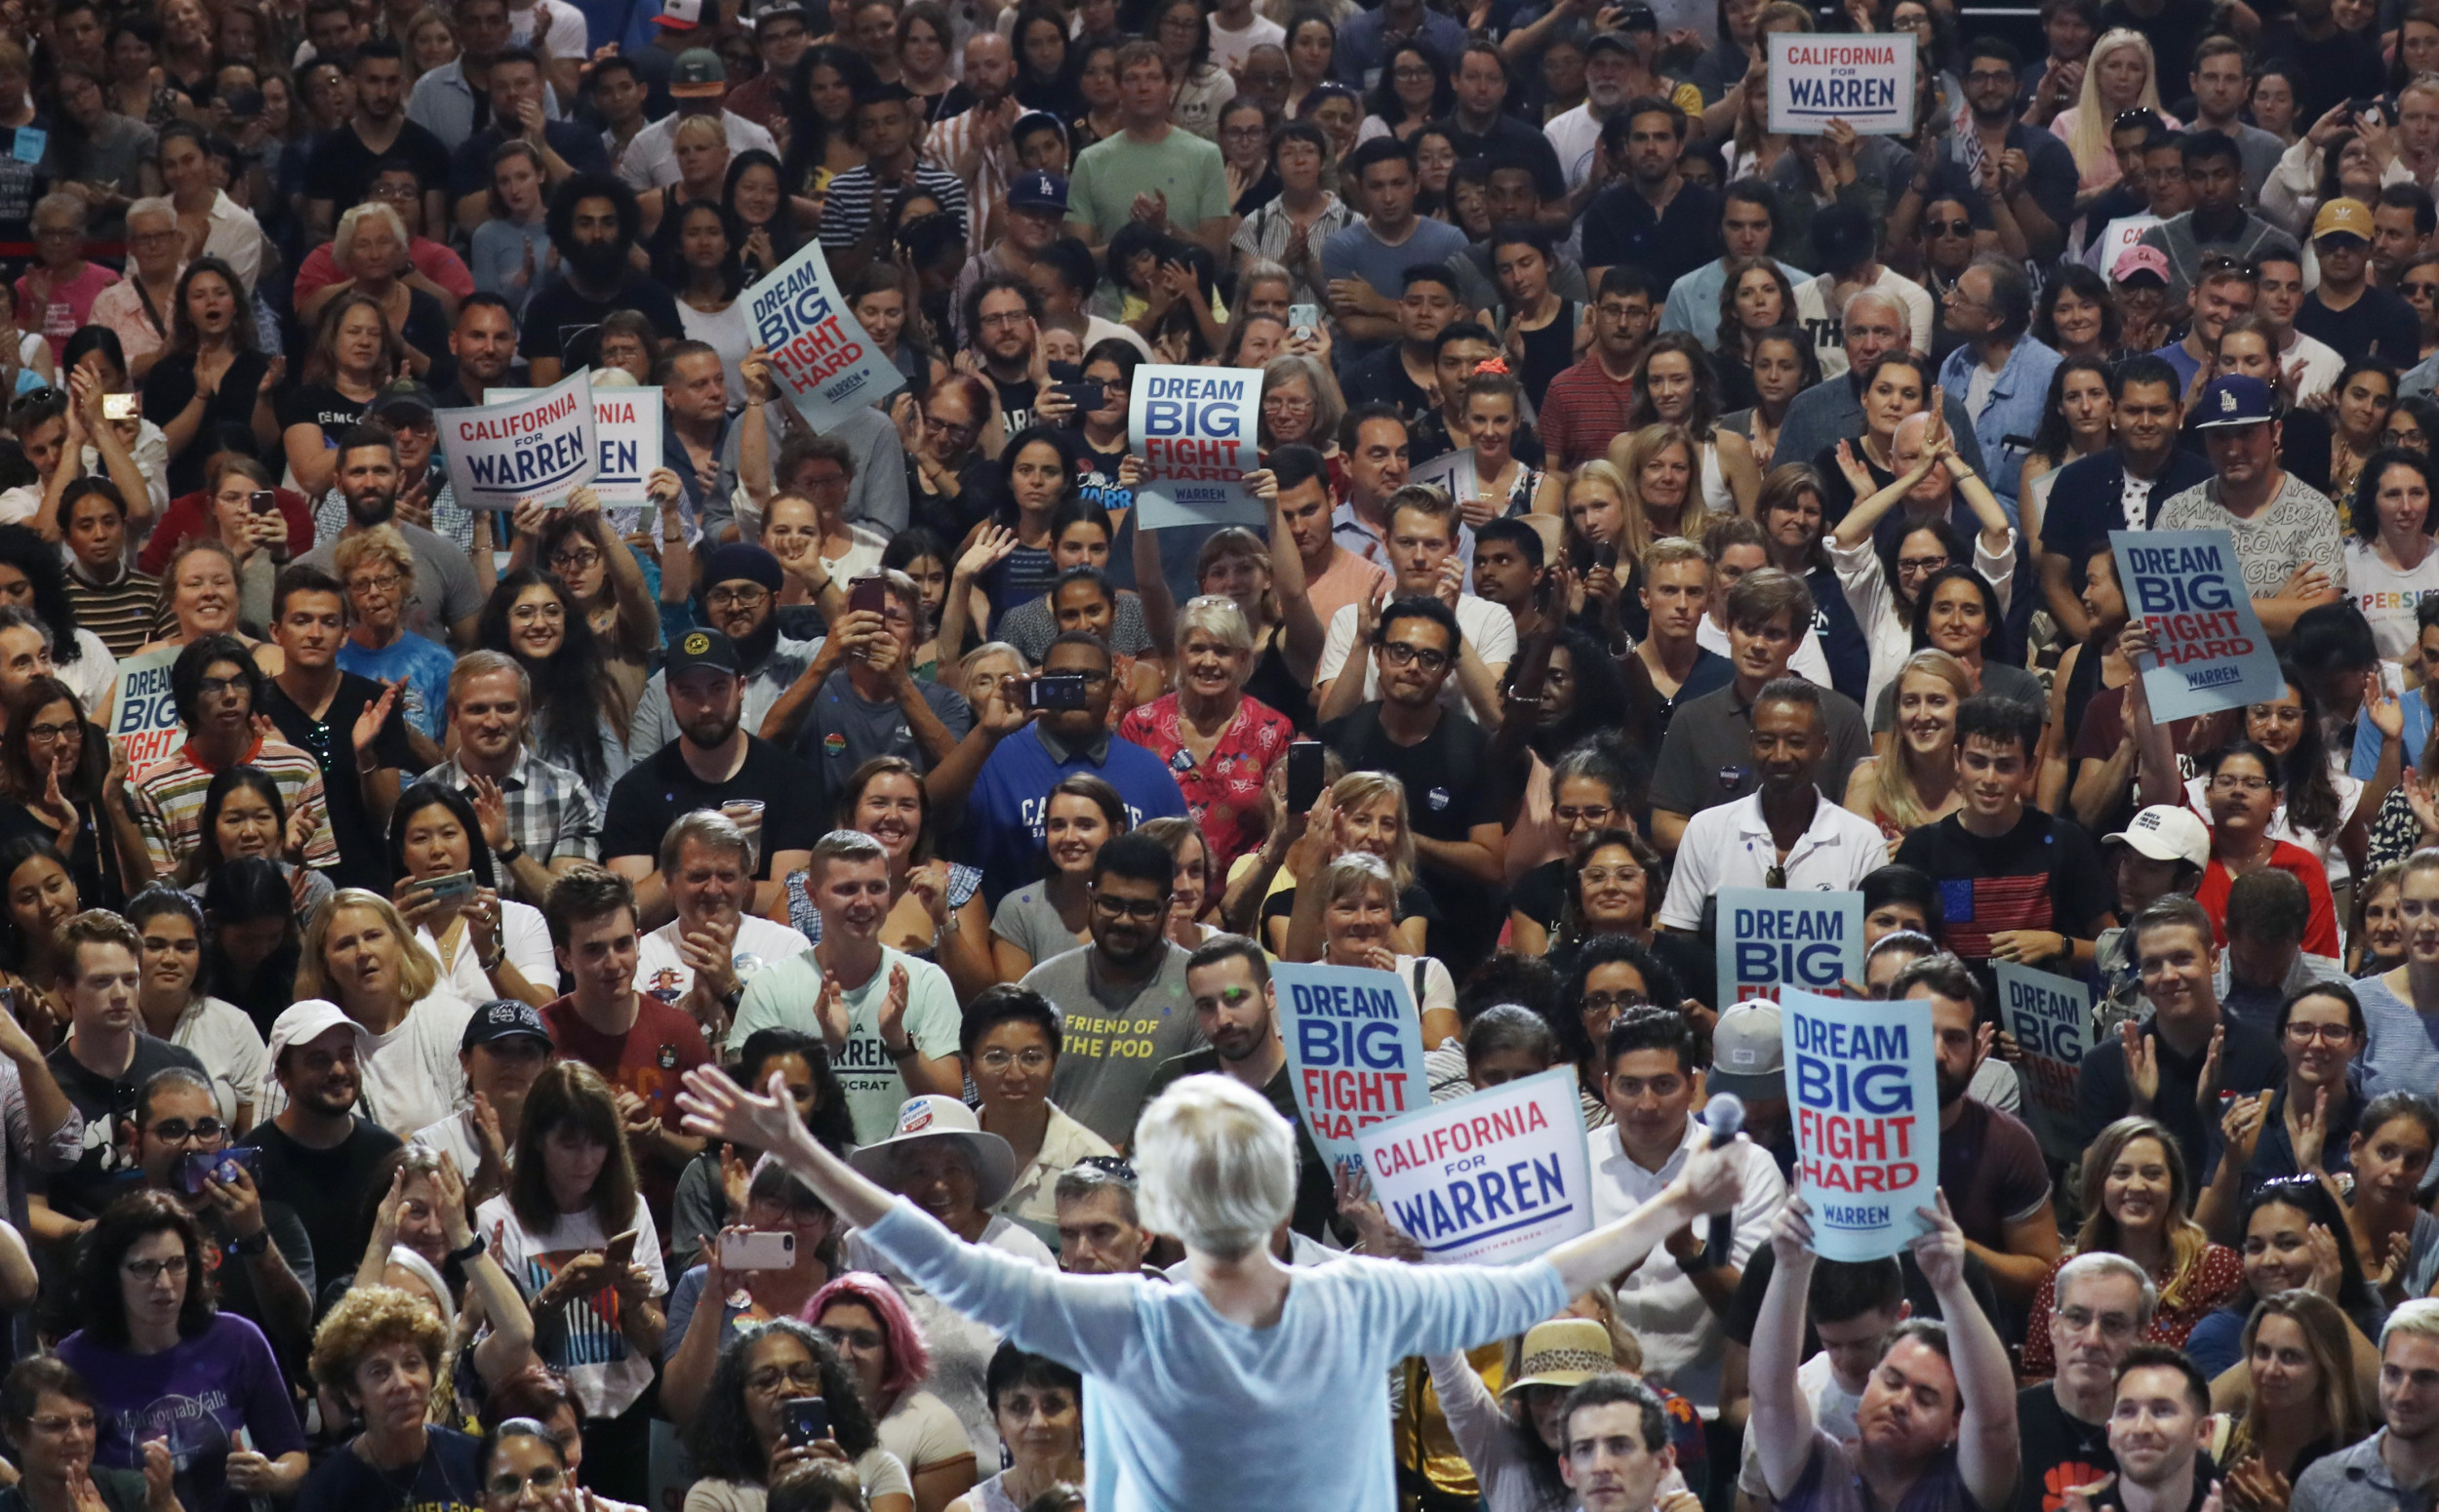 Get Joe Biden 2020 Rally Crowds Pictures